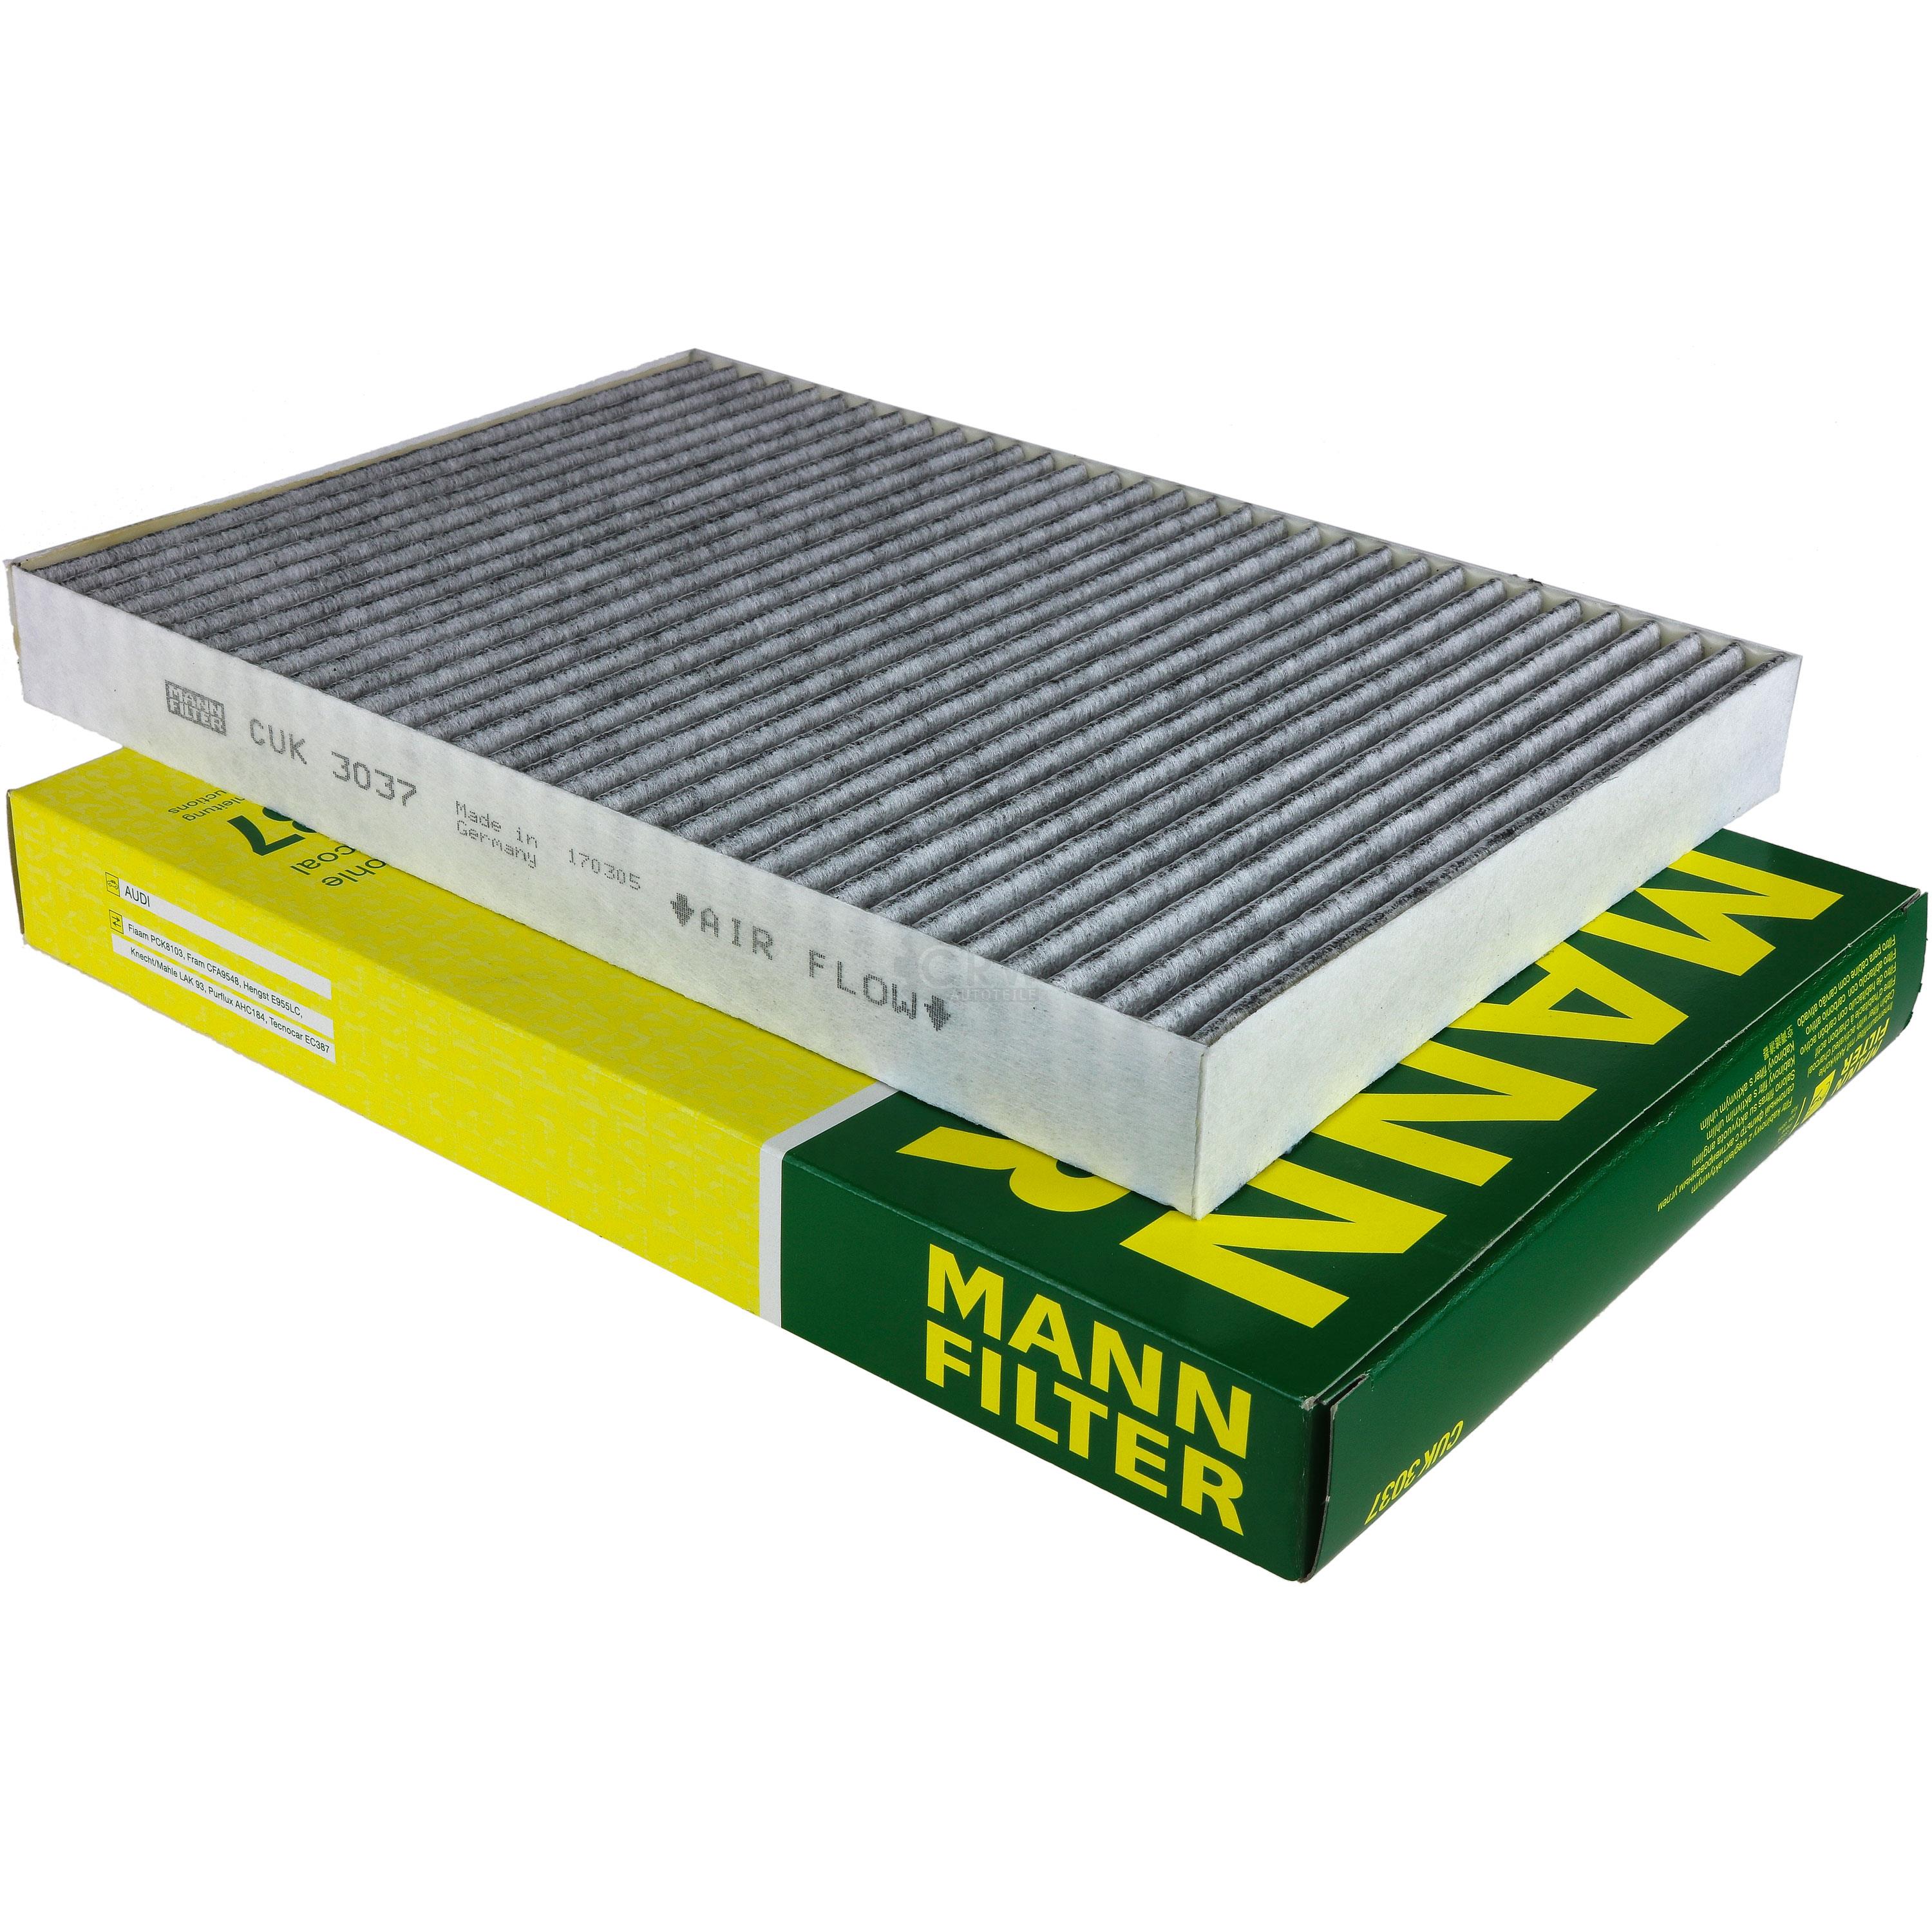 MANN-FILTER Innenraumfilter Pollenfilter Aktivkohle CUK 3037